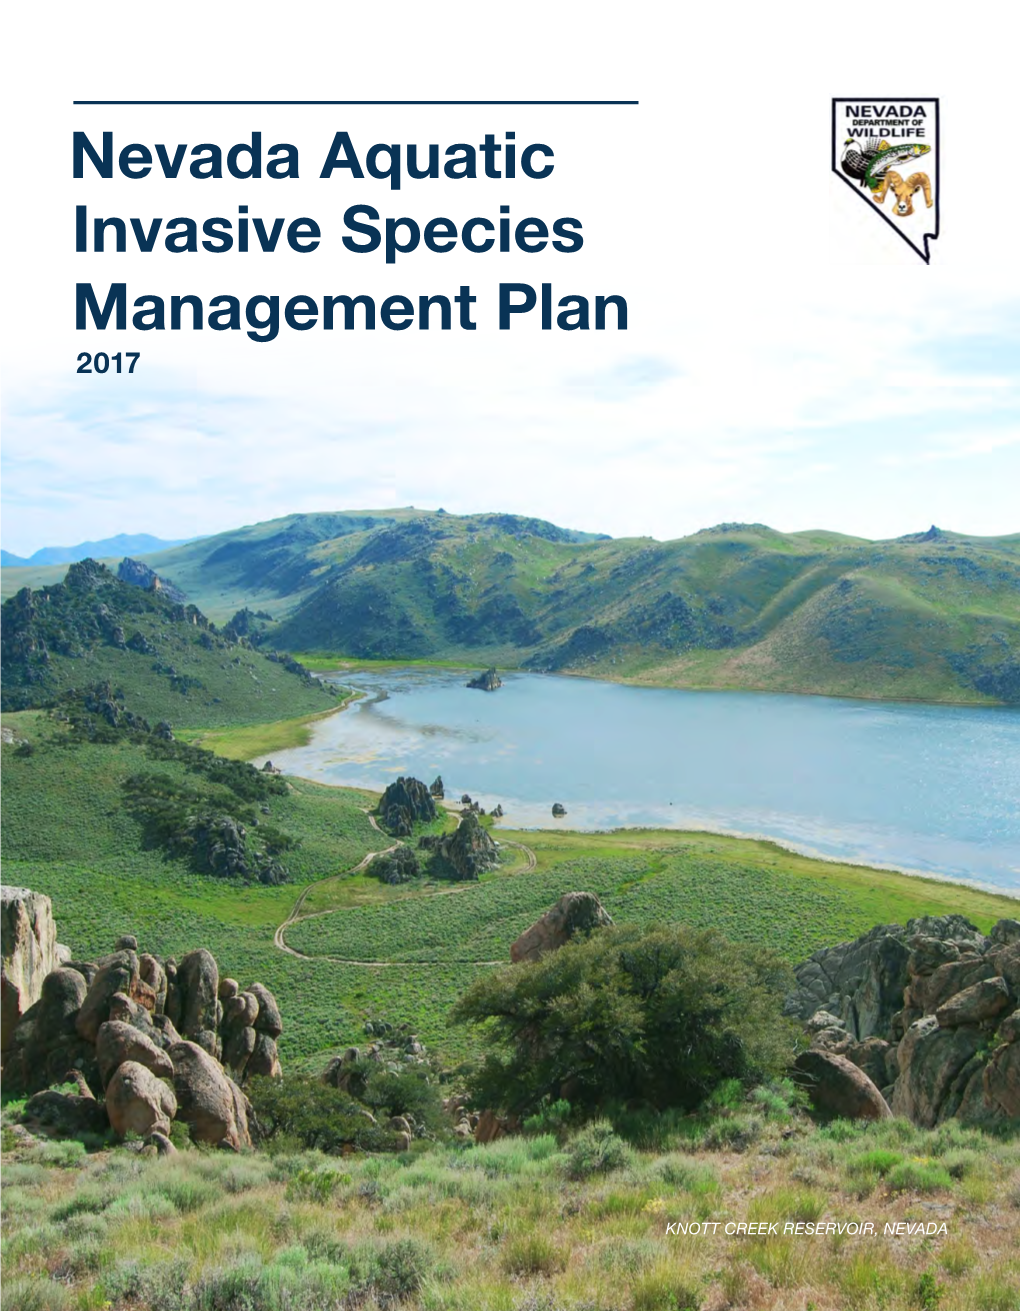 Nevada Aquatic Invasive Species Management Plan 2017